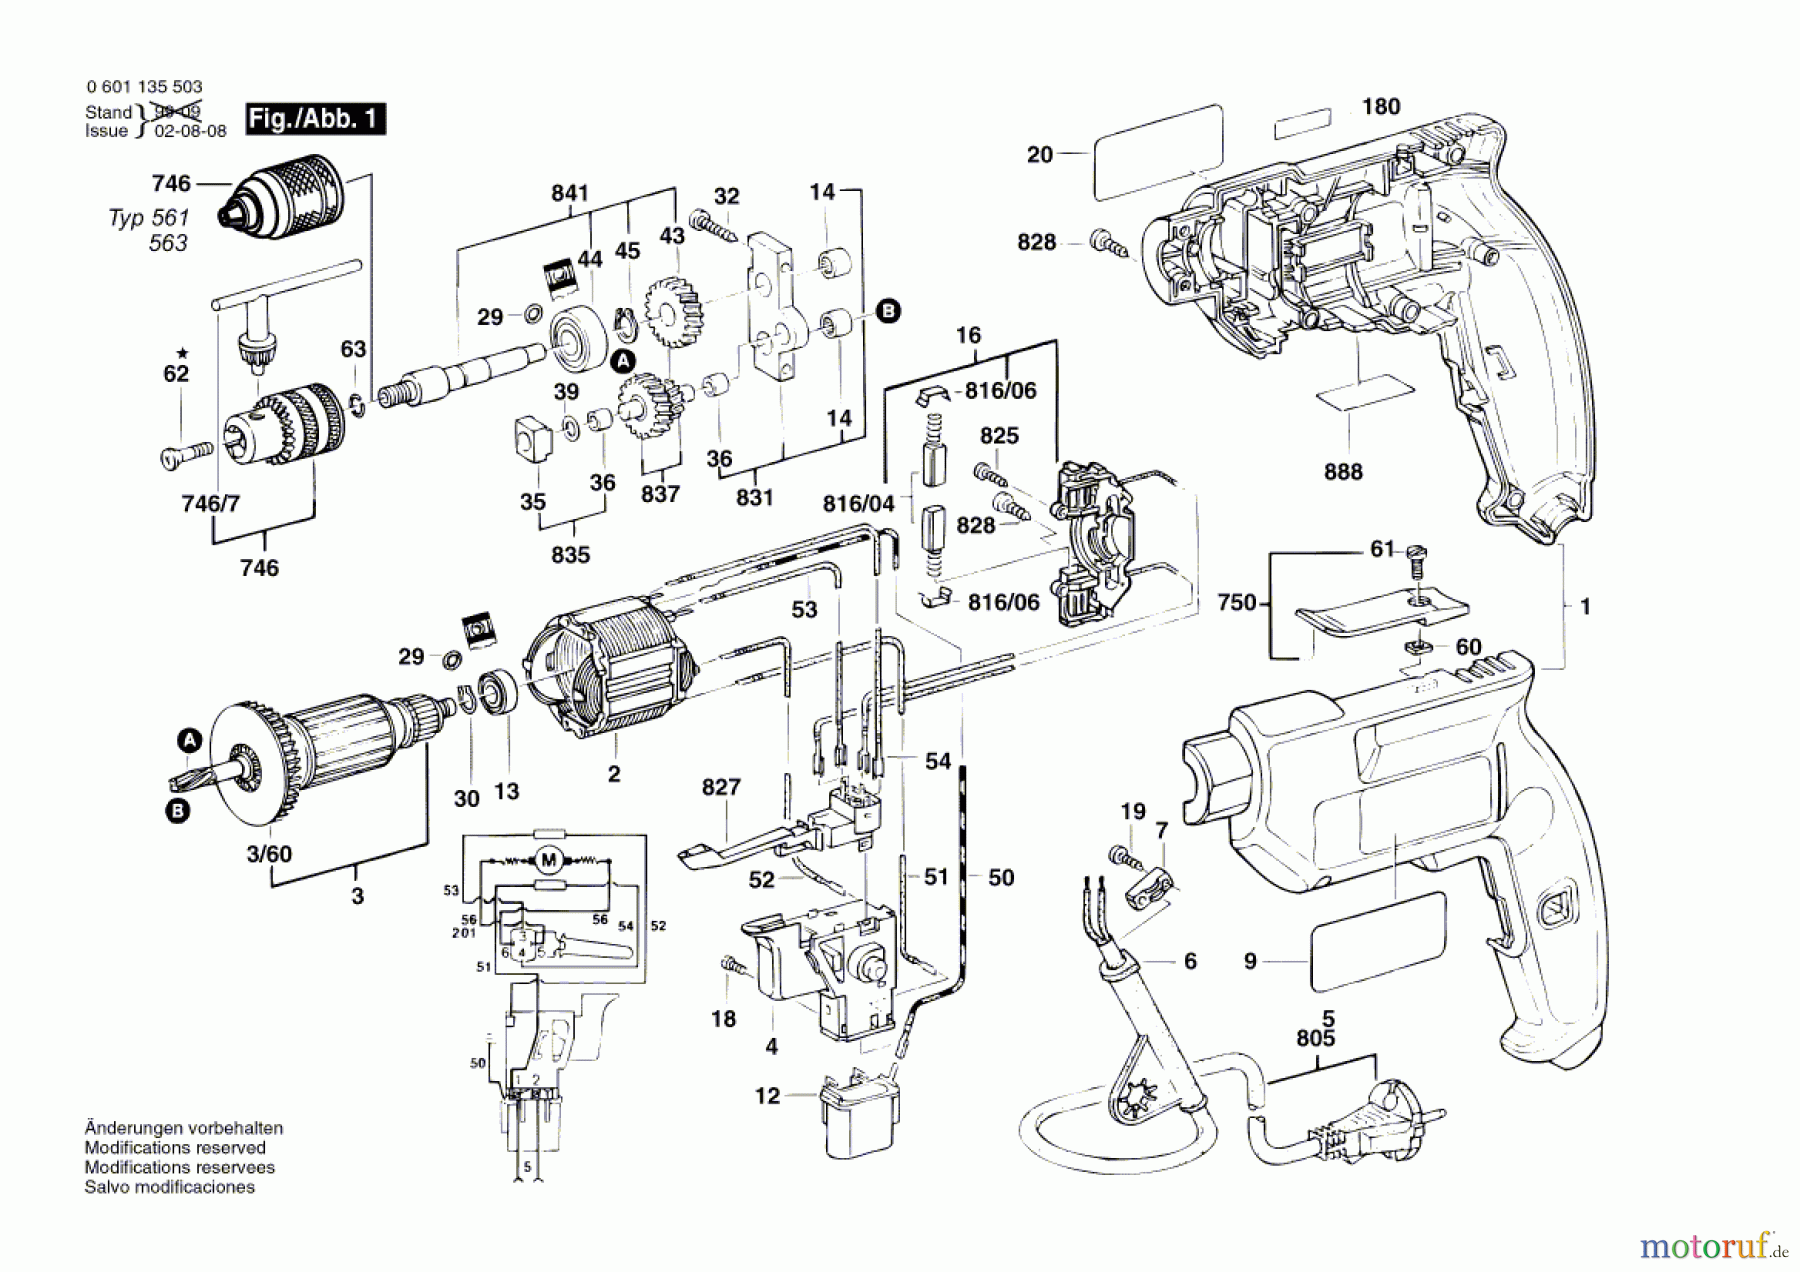  Bosch Werkzeug Bohrmaschine GBM 10 RE Seite 1